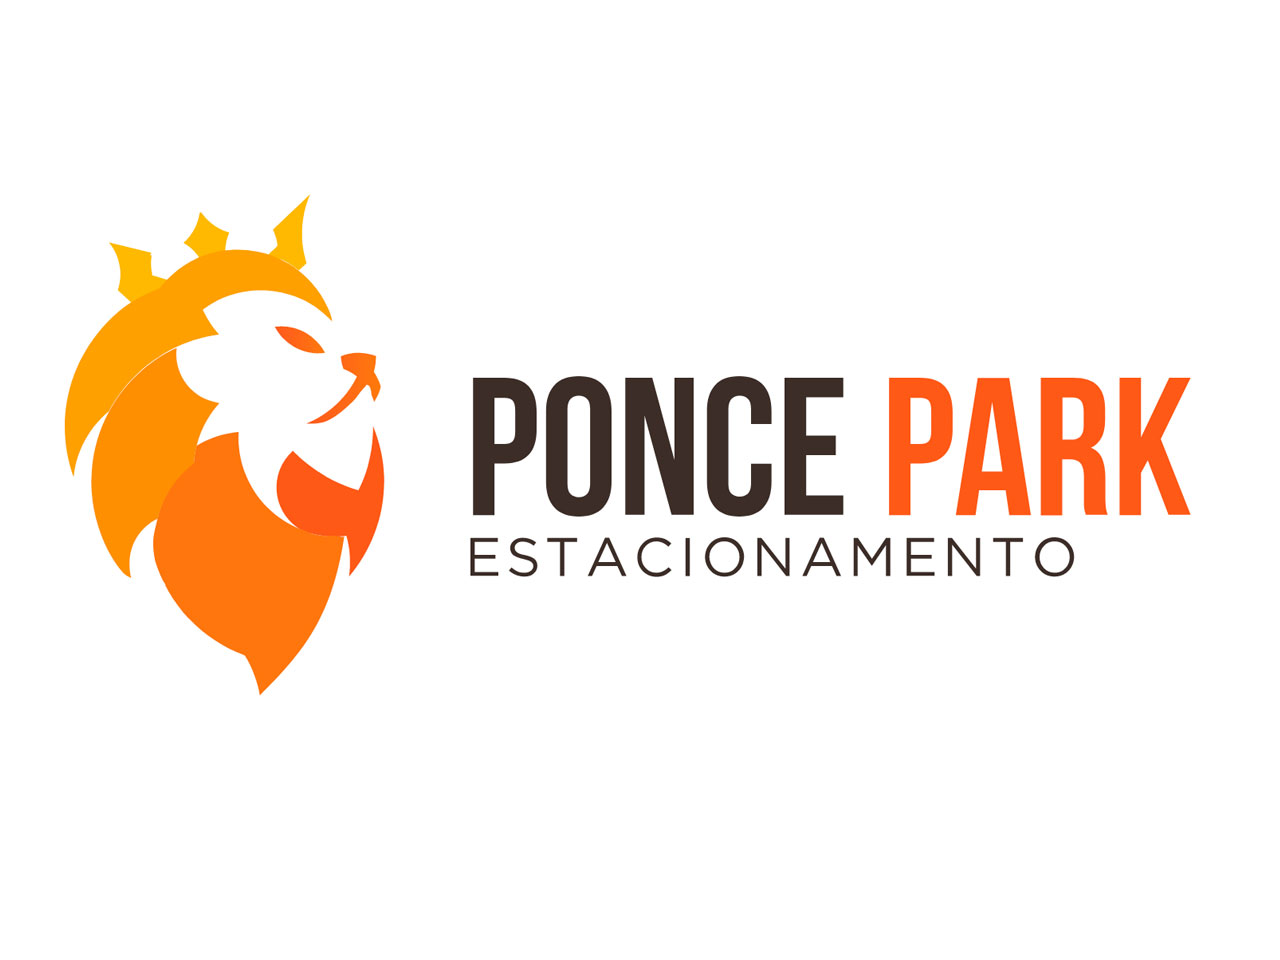 Logo da Ponce Park Estacionamento em Guarulhos